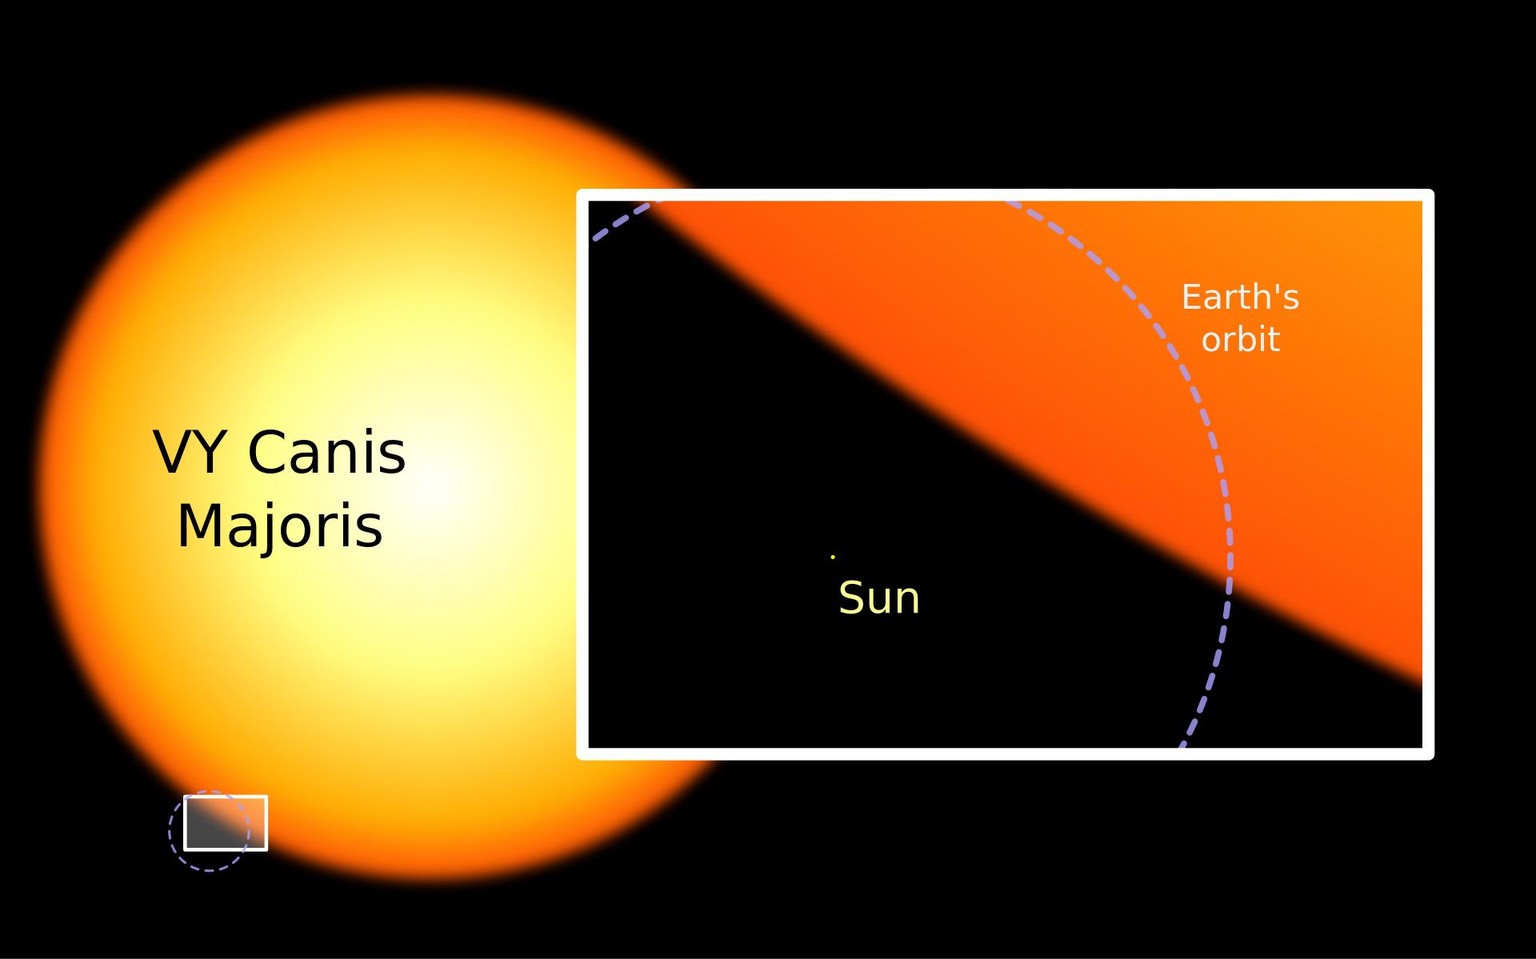 Die Sonne und der Rote Überriese VY Canis Majoris im Grössenvergleich
https://de.wikipedia.org/wiki/VY_Canis_Majoris#/media/Datei:Sun_and_VY_Canis_Majoris.svg